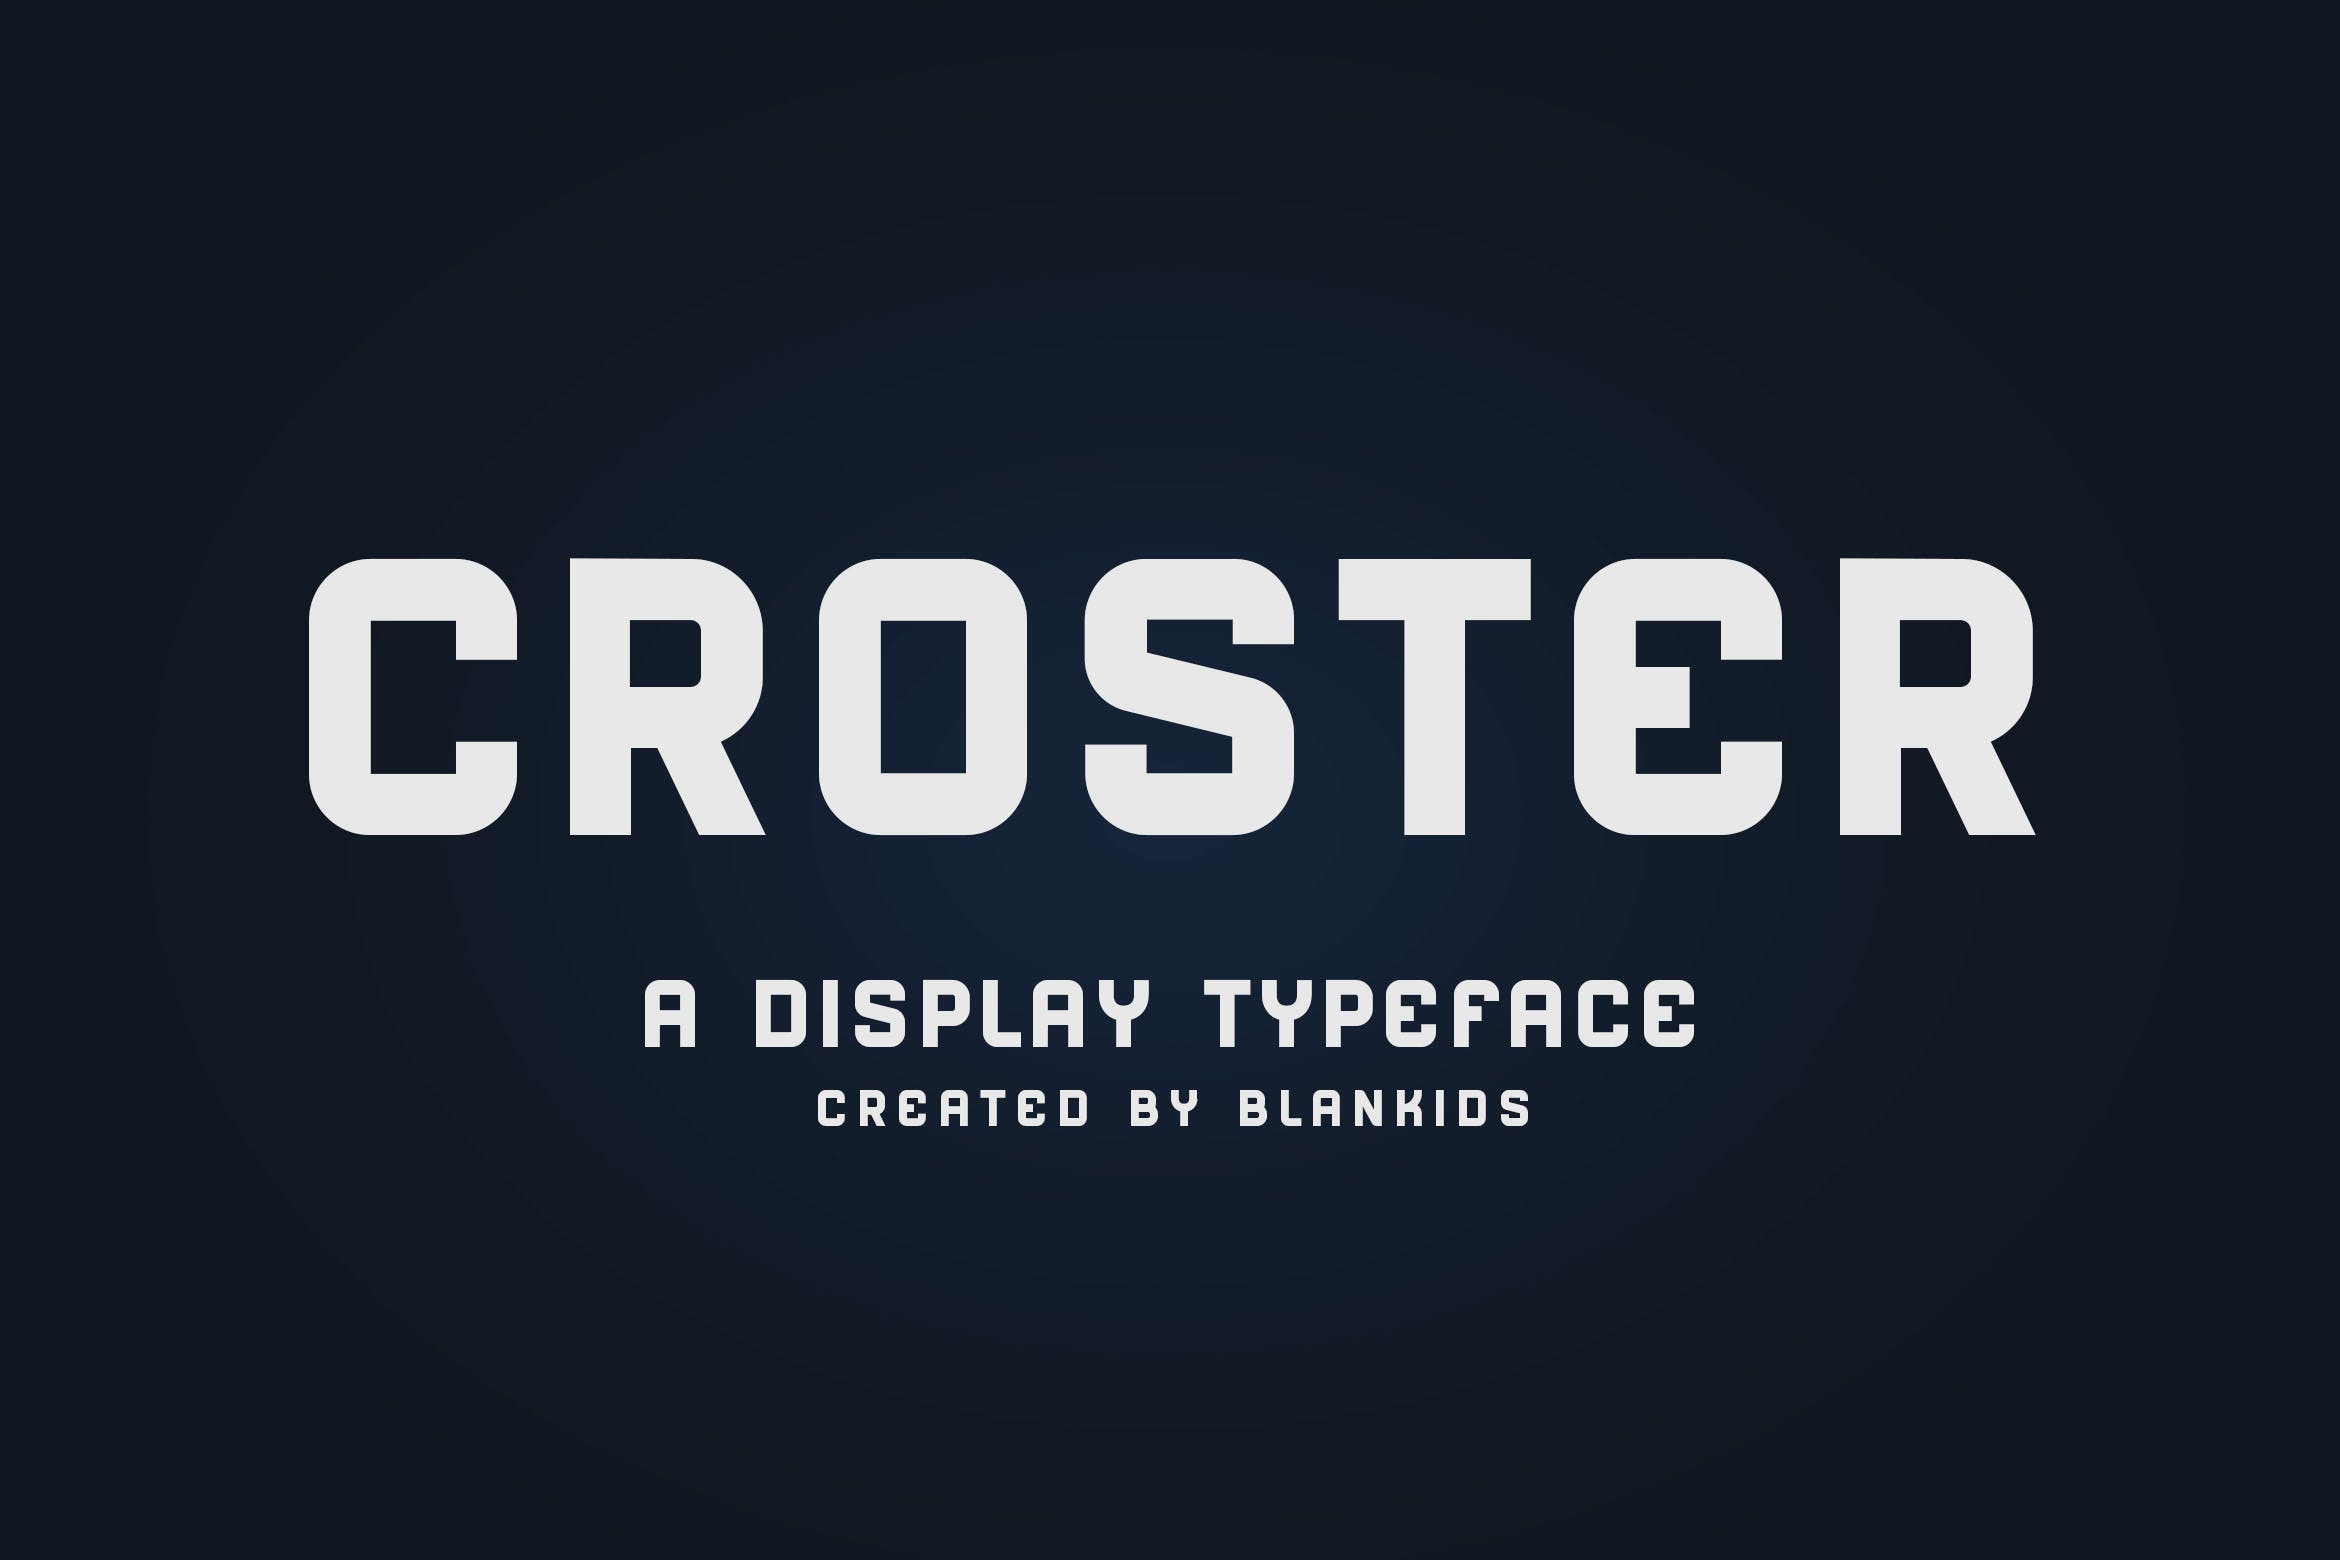 圆润英文无衬线排版字体下载 Croster – Display Typeface插图